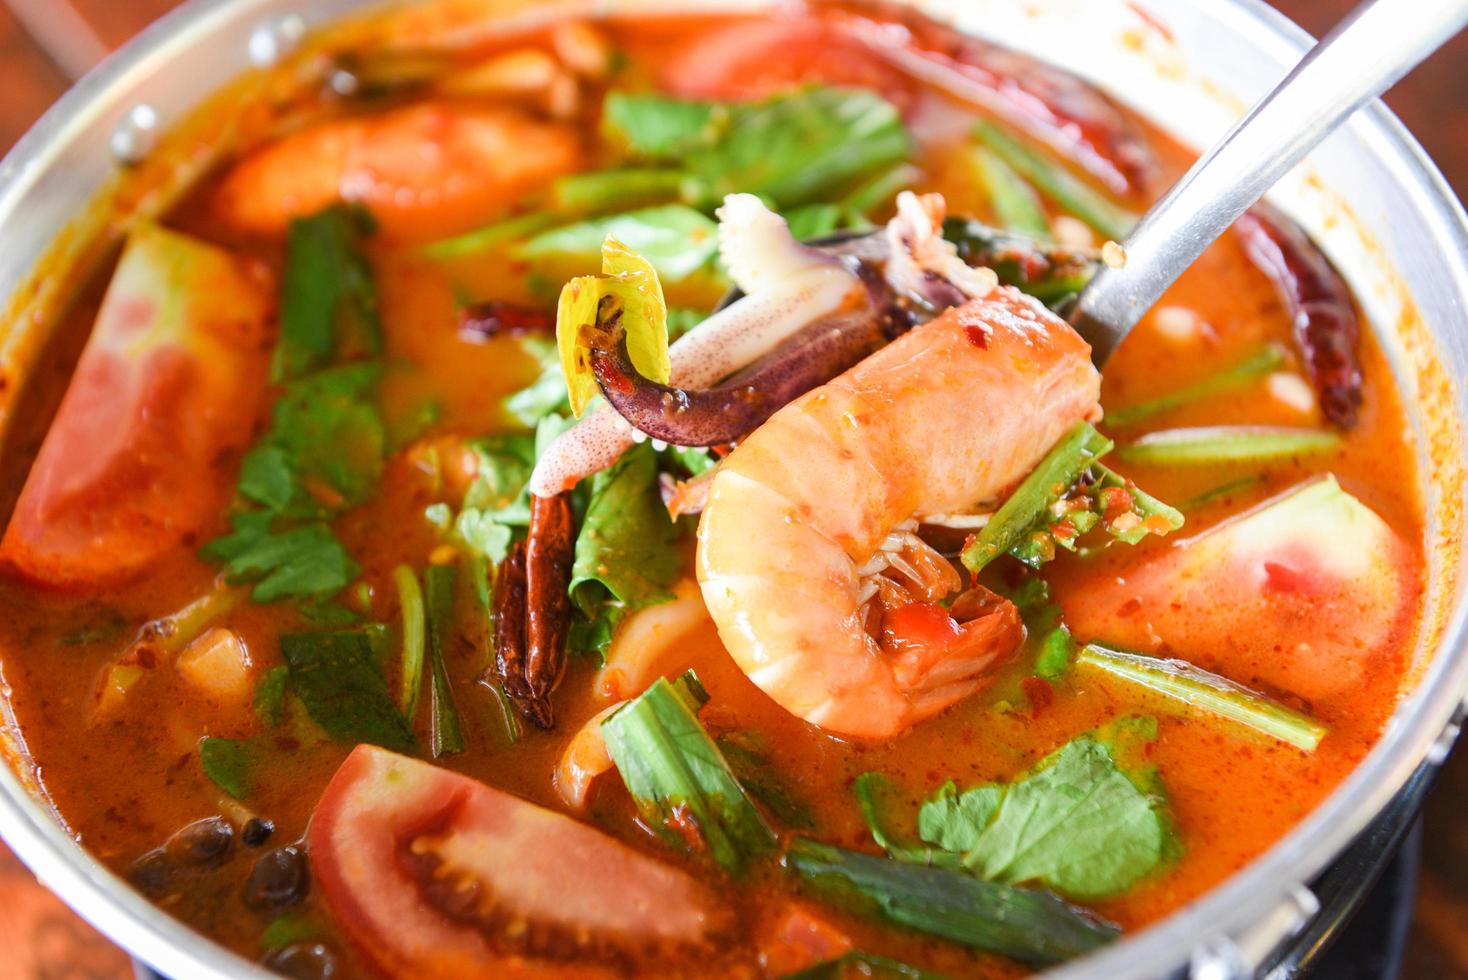 sopa de gambas, sopa picante con camarones, mariscos, leche de coco y ají en una olla, camarones al curry agridulce y calamares comida tailandesa asiática foto